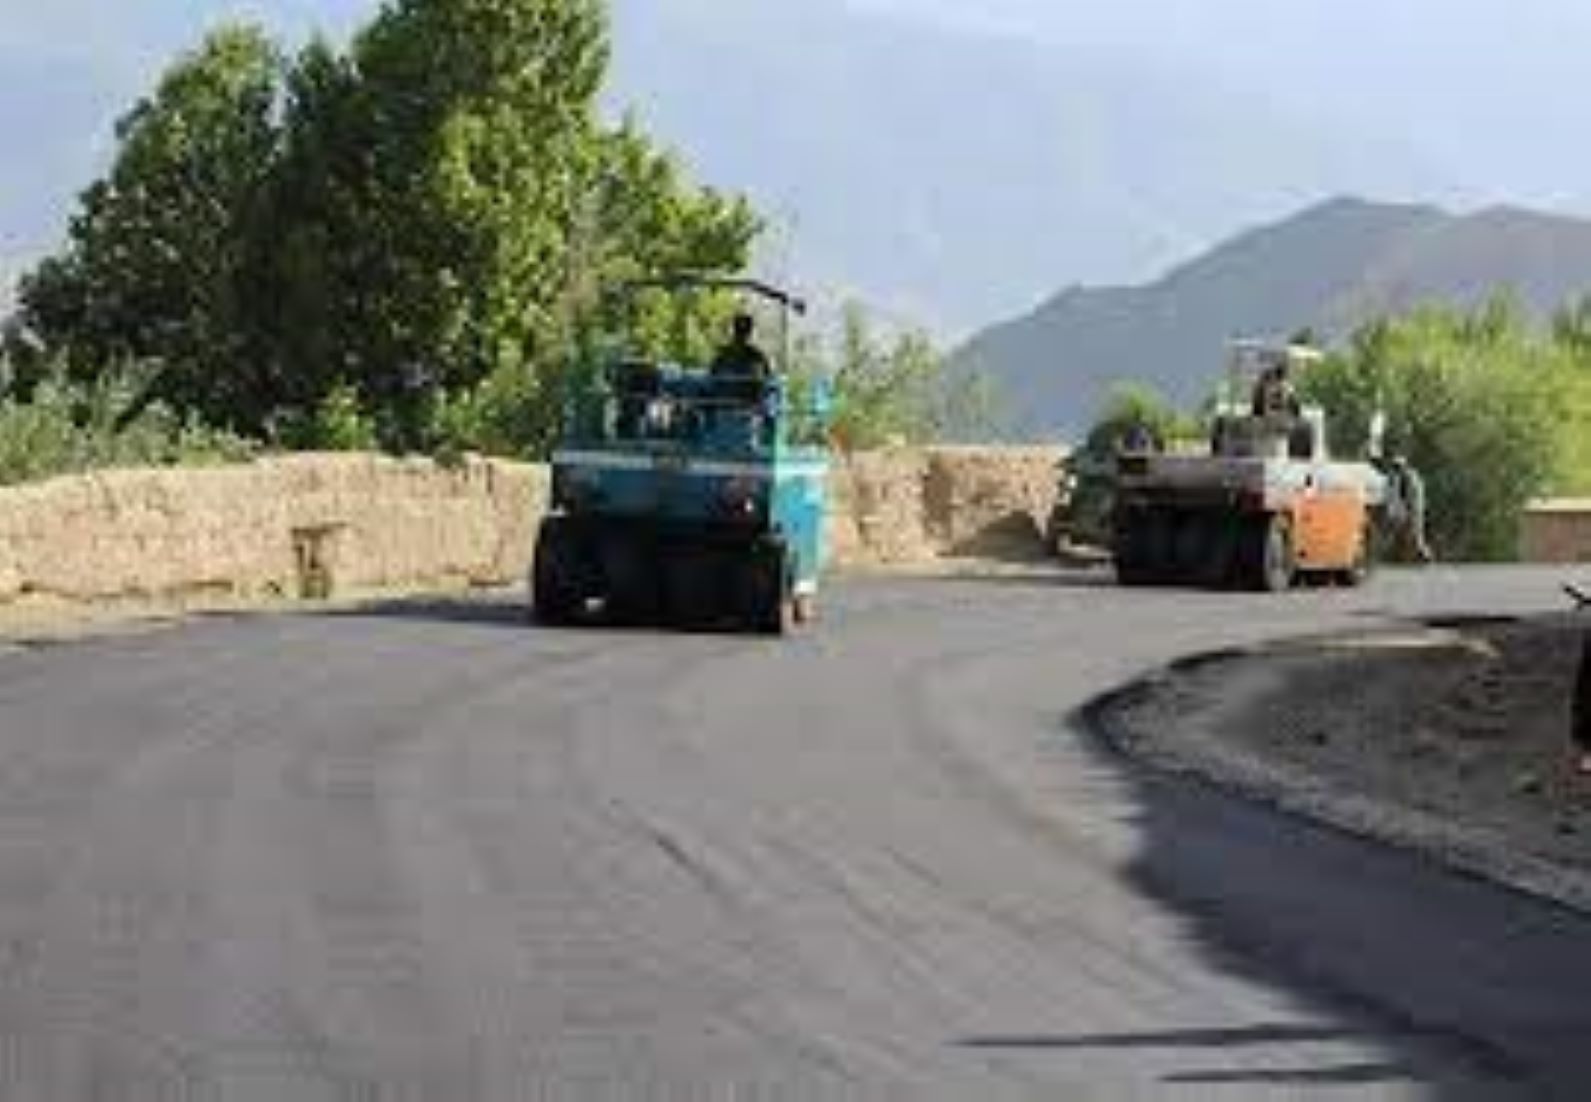 Asphalting Work For Major Road Begins In North Afghanistan’s Baghlan